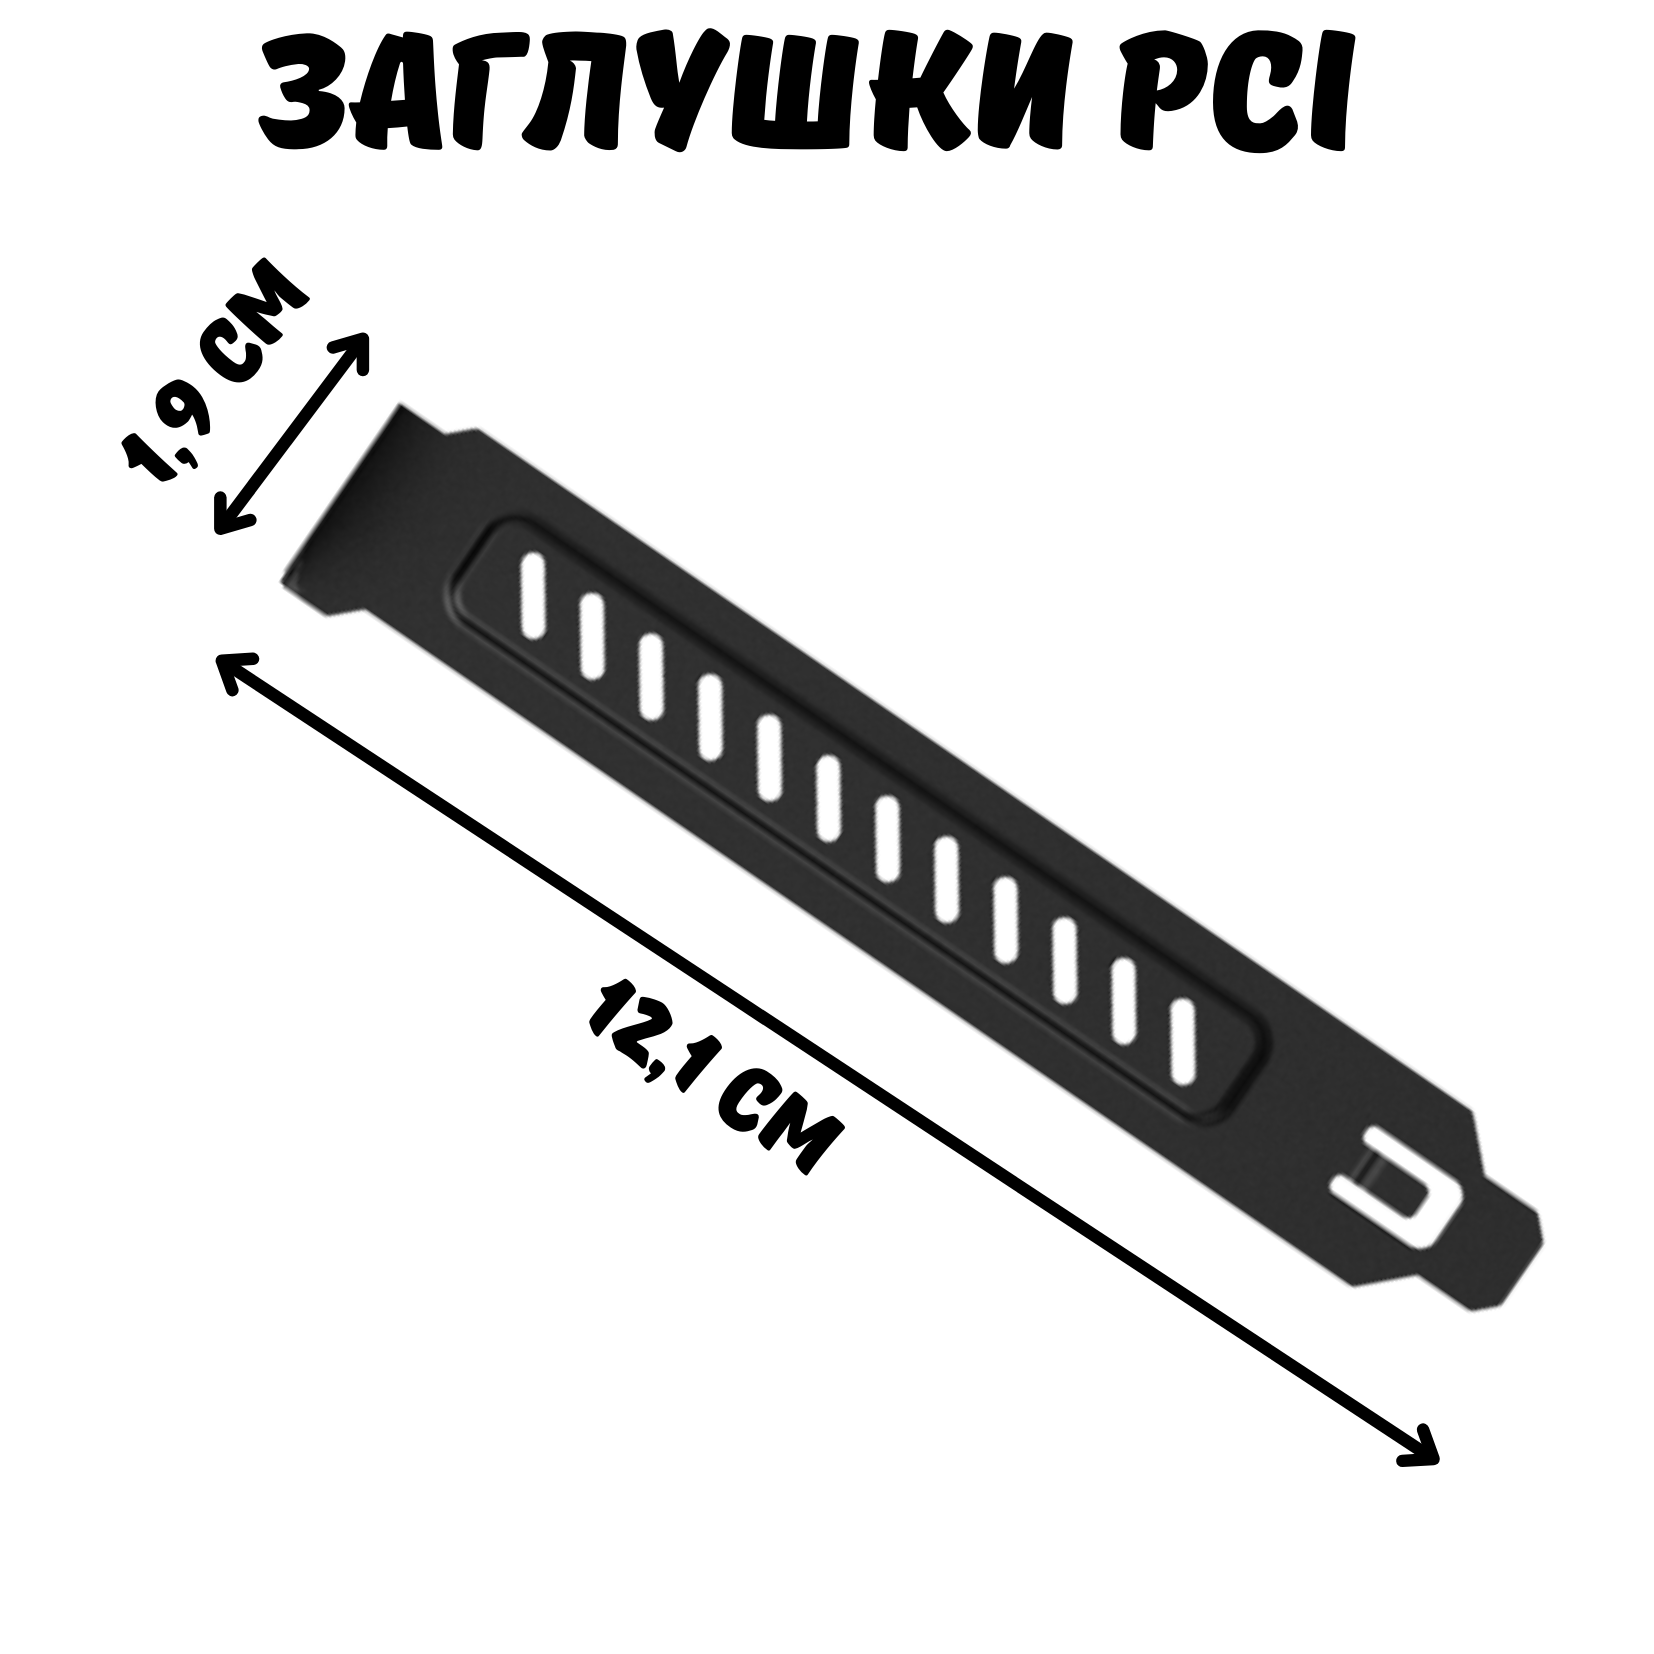 Заглушки PCI слота для корпуса компьютера, пылезащитные, 5 шт